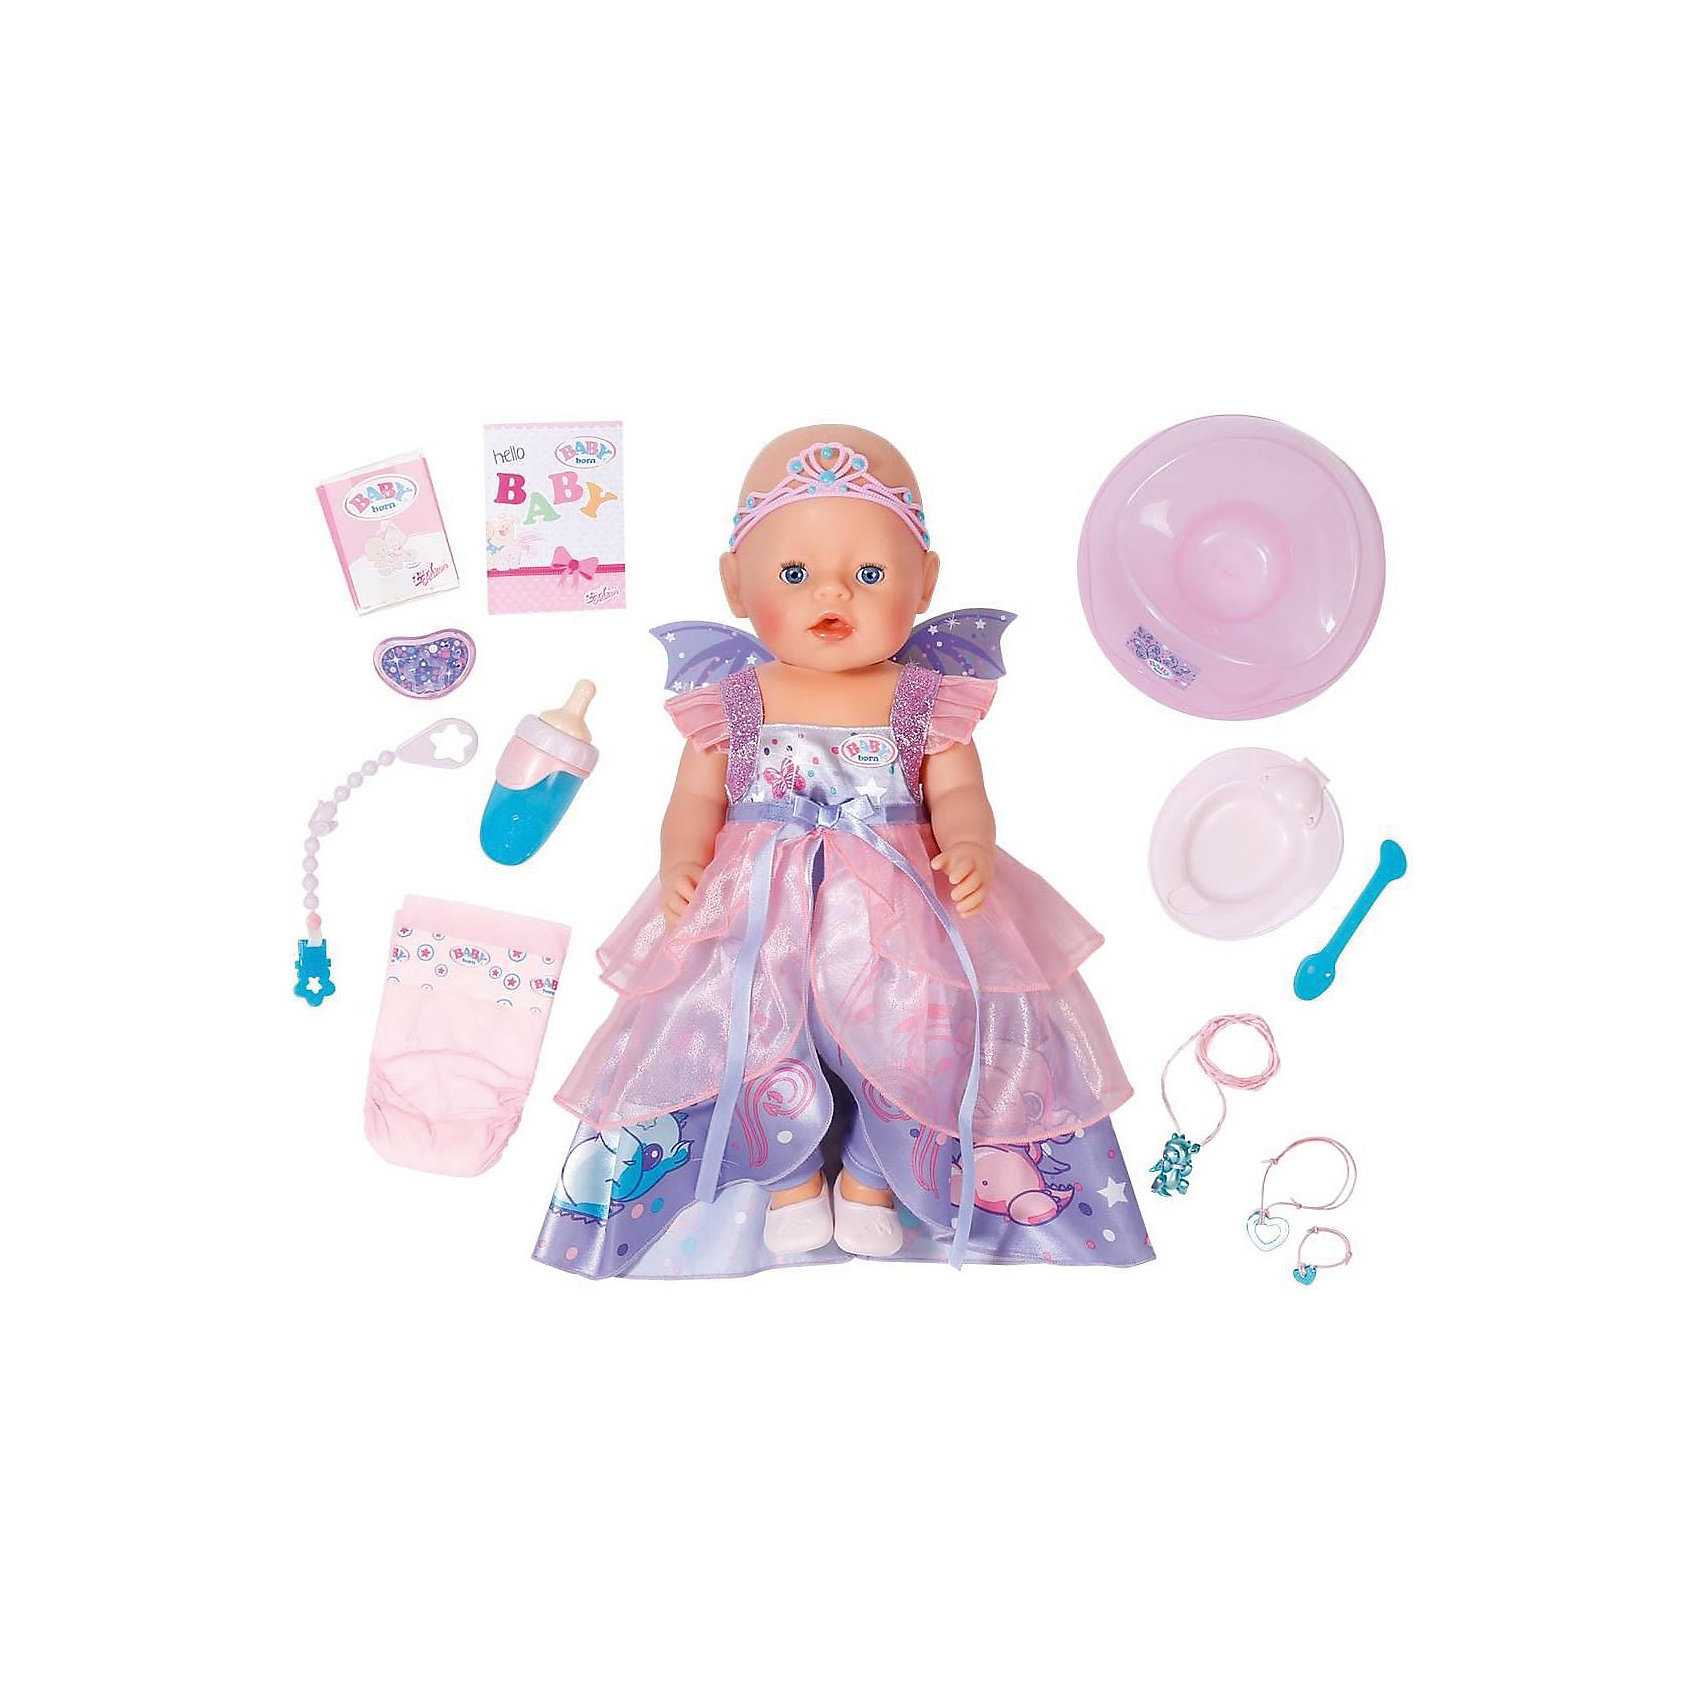 Интерактивная кукла baby born (беби бон, беби борн): видео, фото